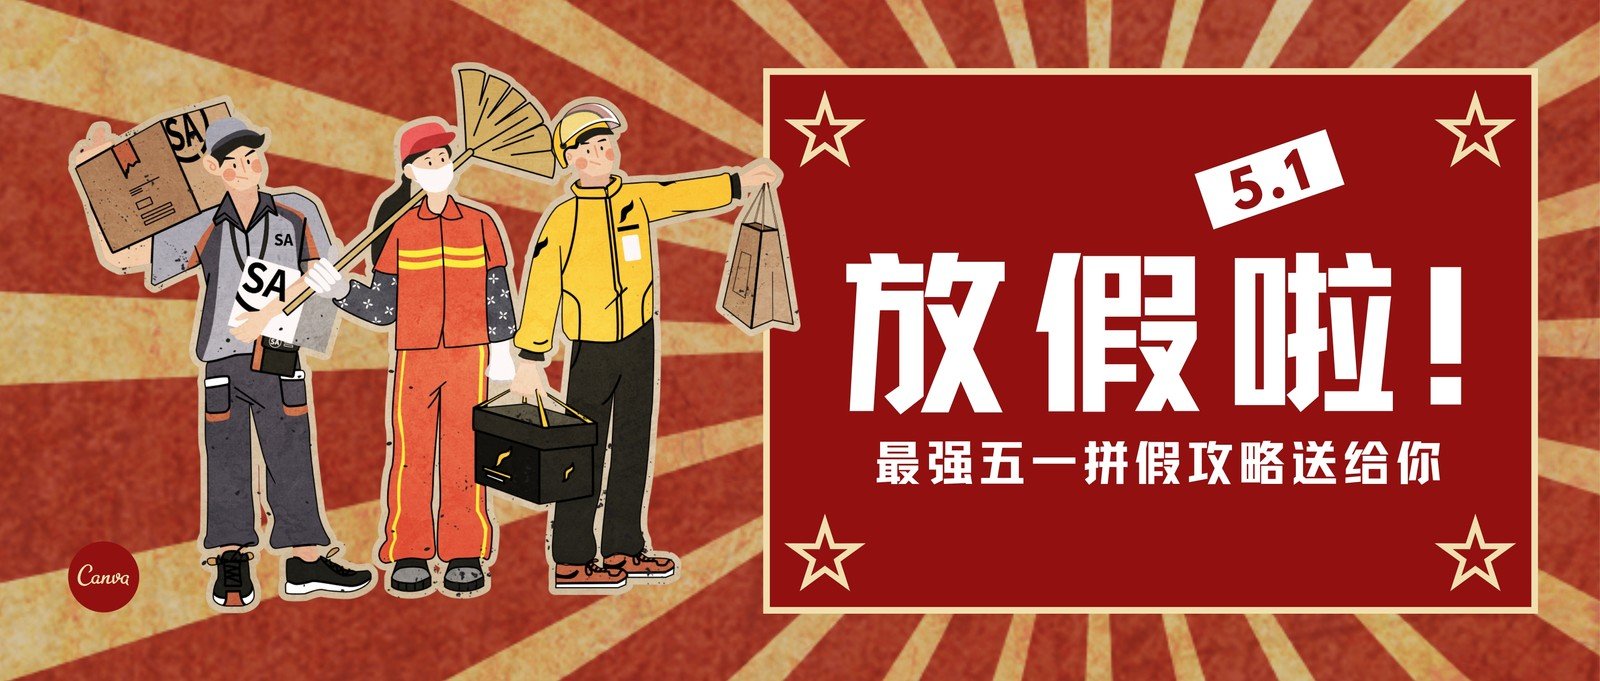 红黄色复古职业人物放射背景复古劳动节节日宣传中文微信公众号